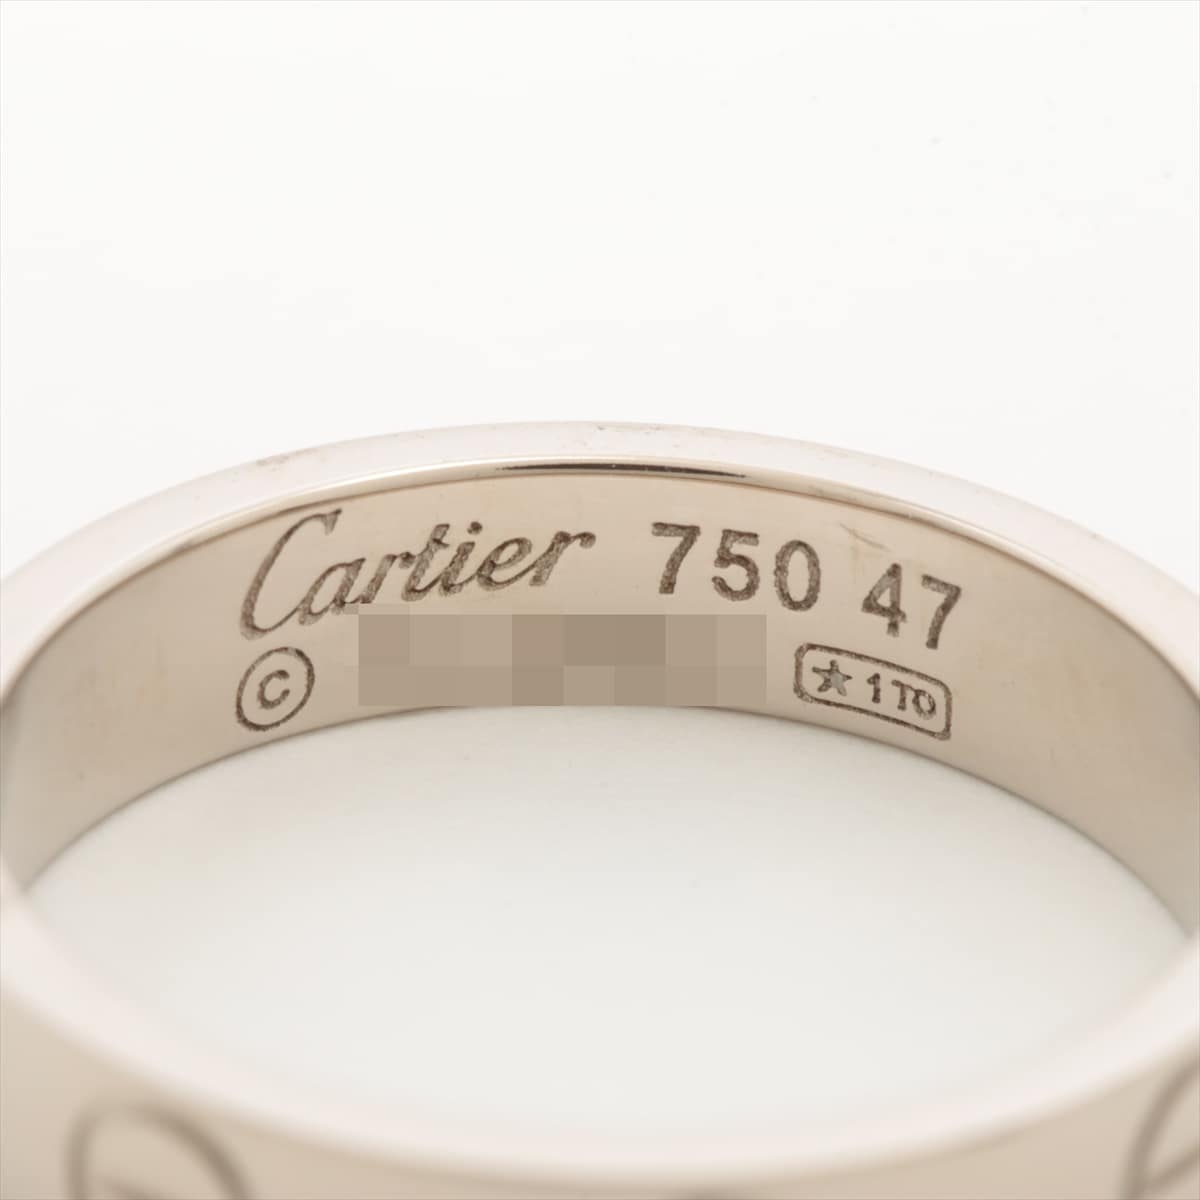 ◾︎説明Cartier カルティエ ミニラブリング 750 47